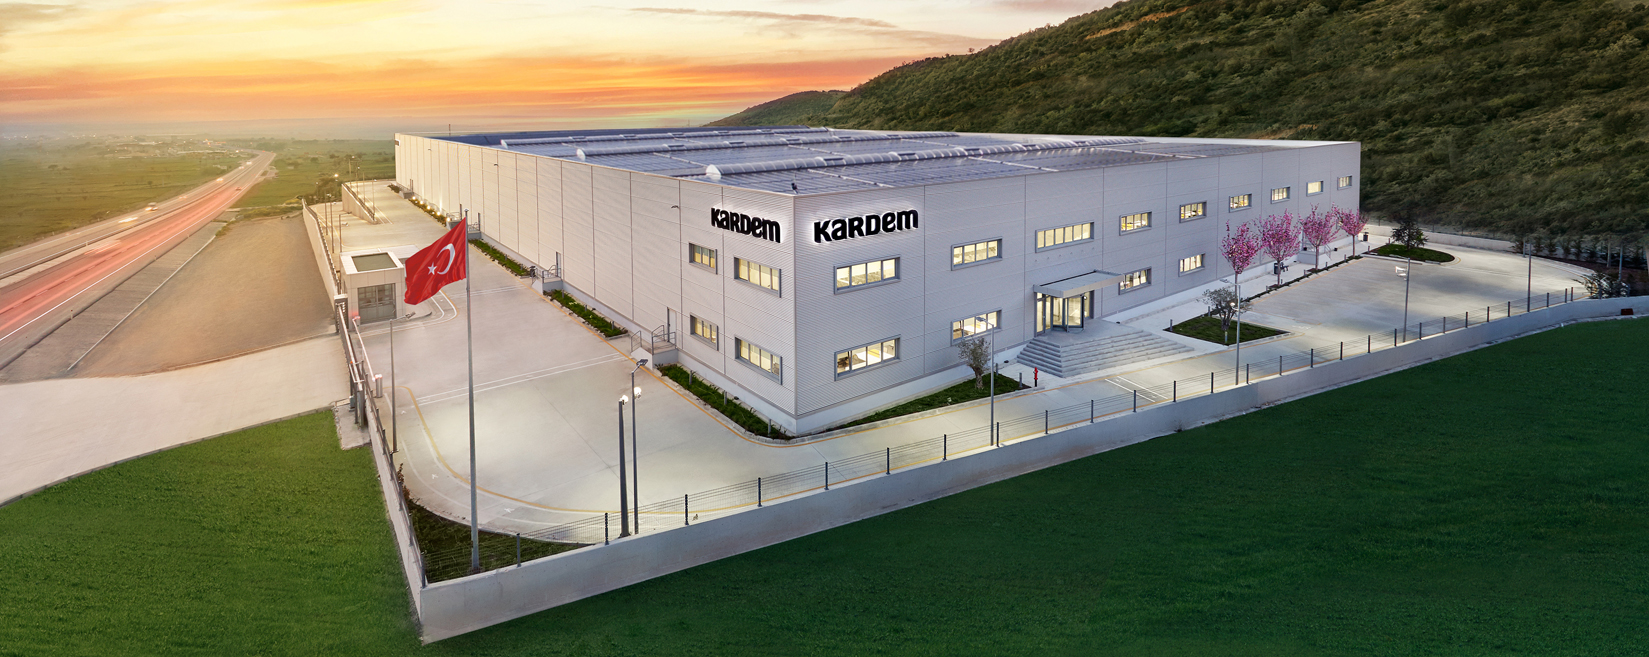 kardem-tekstil-factory_085354353